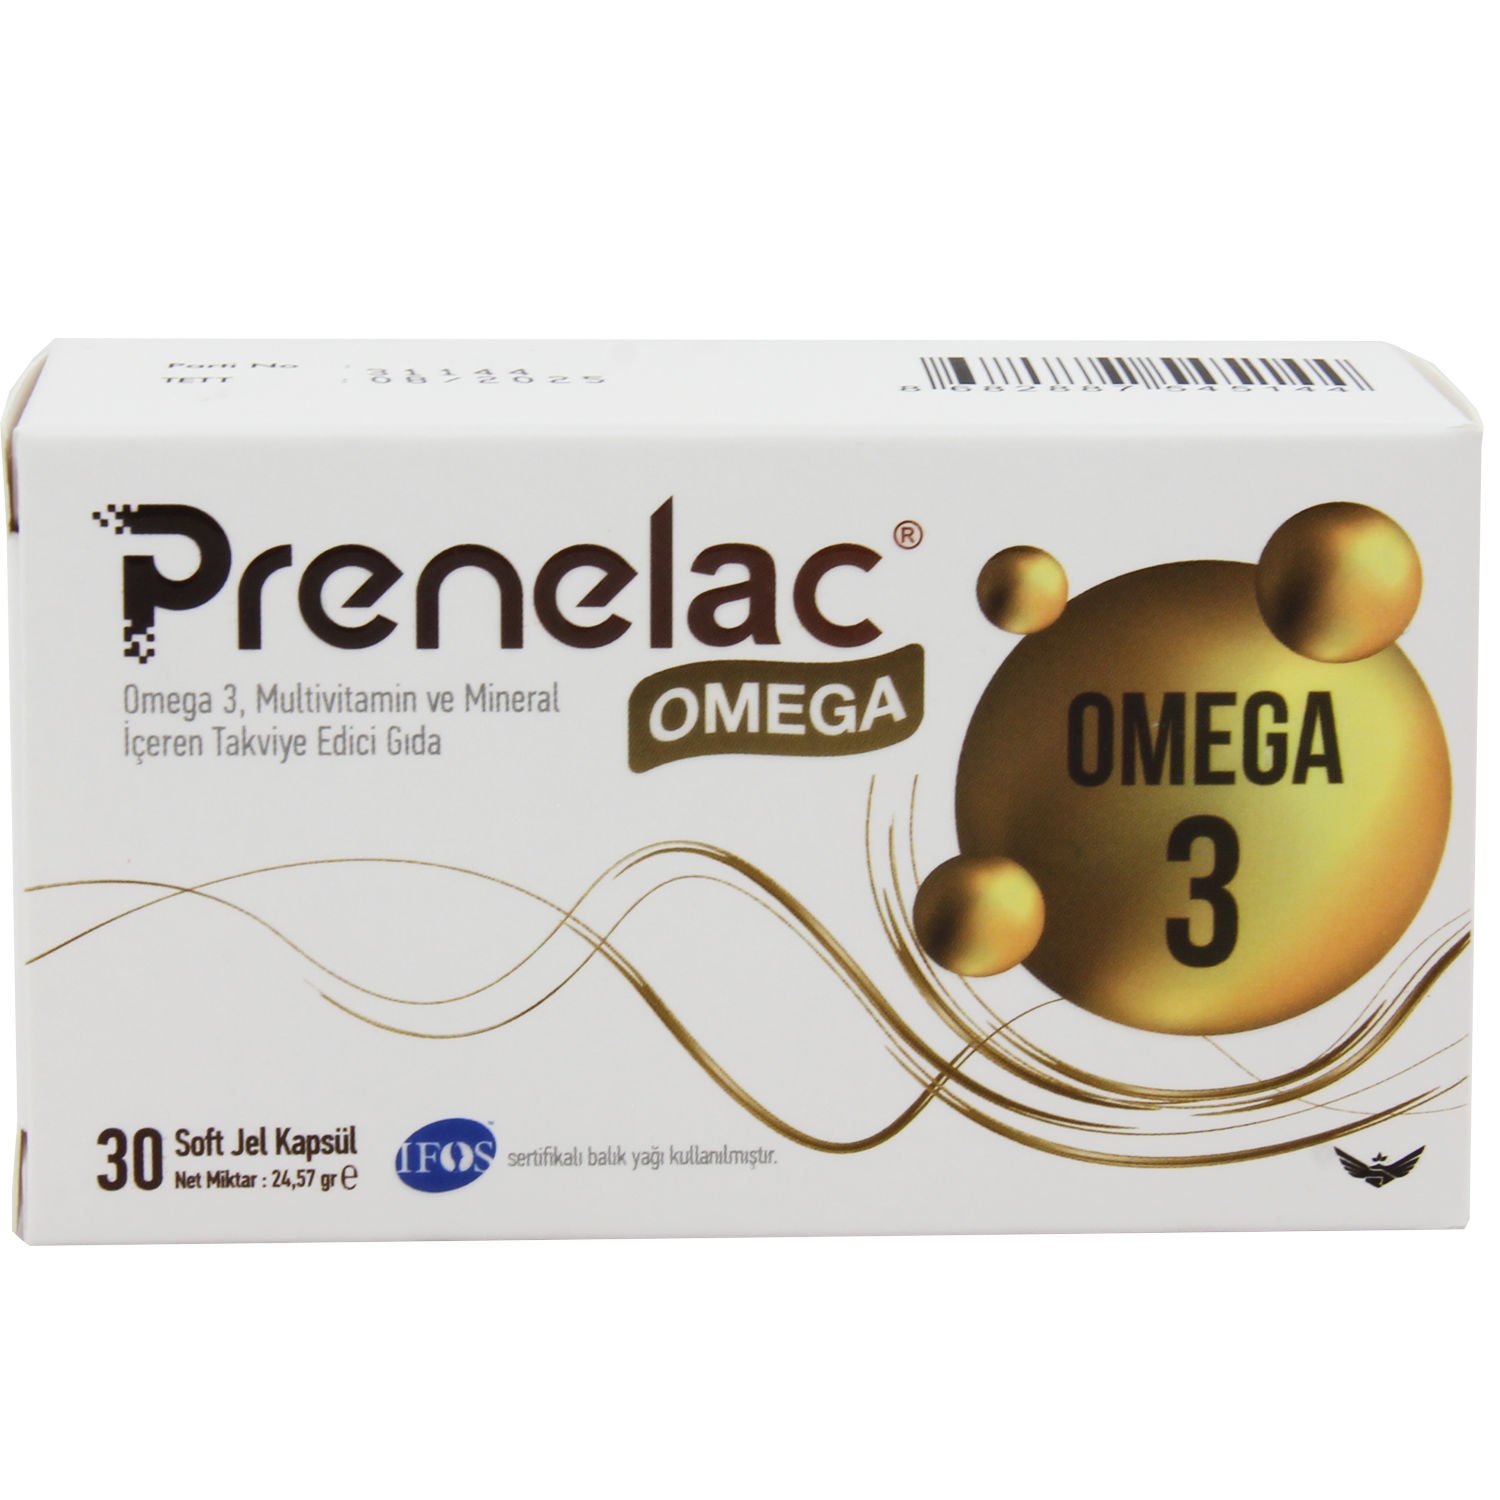 Prenelac Omega 3 Takviye Edici Gıda 30 Soft Jel Kapsül